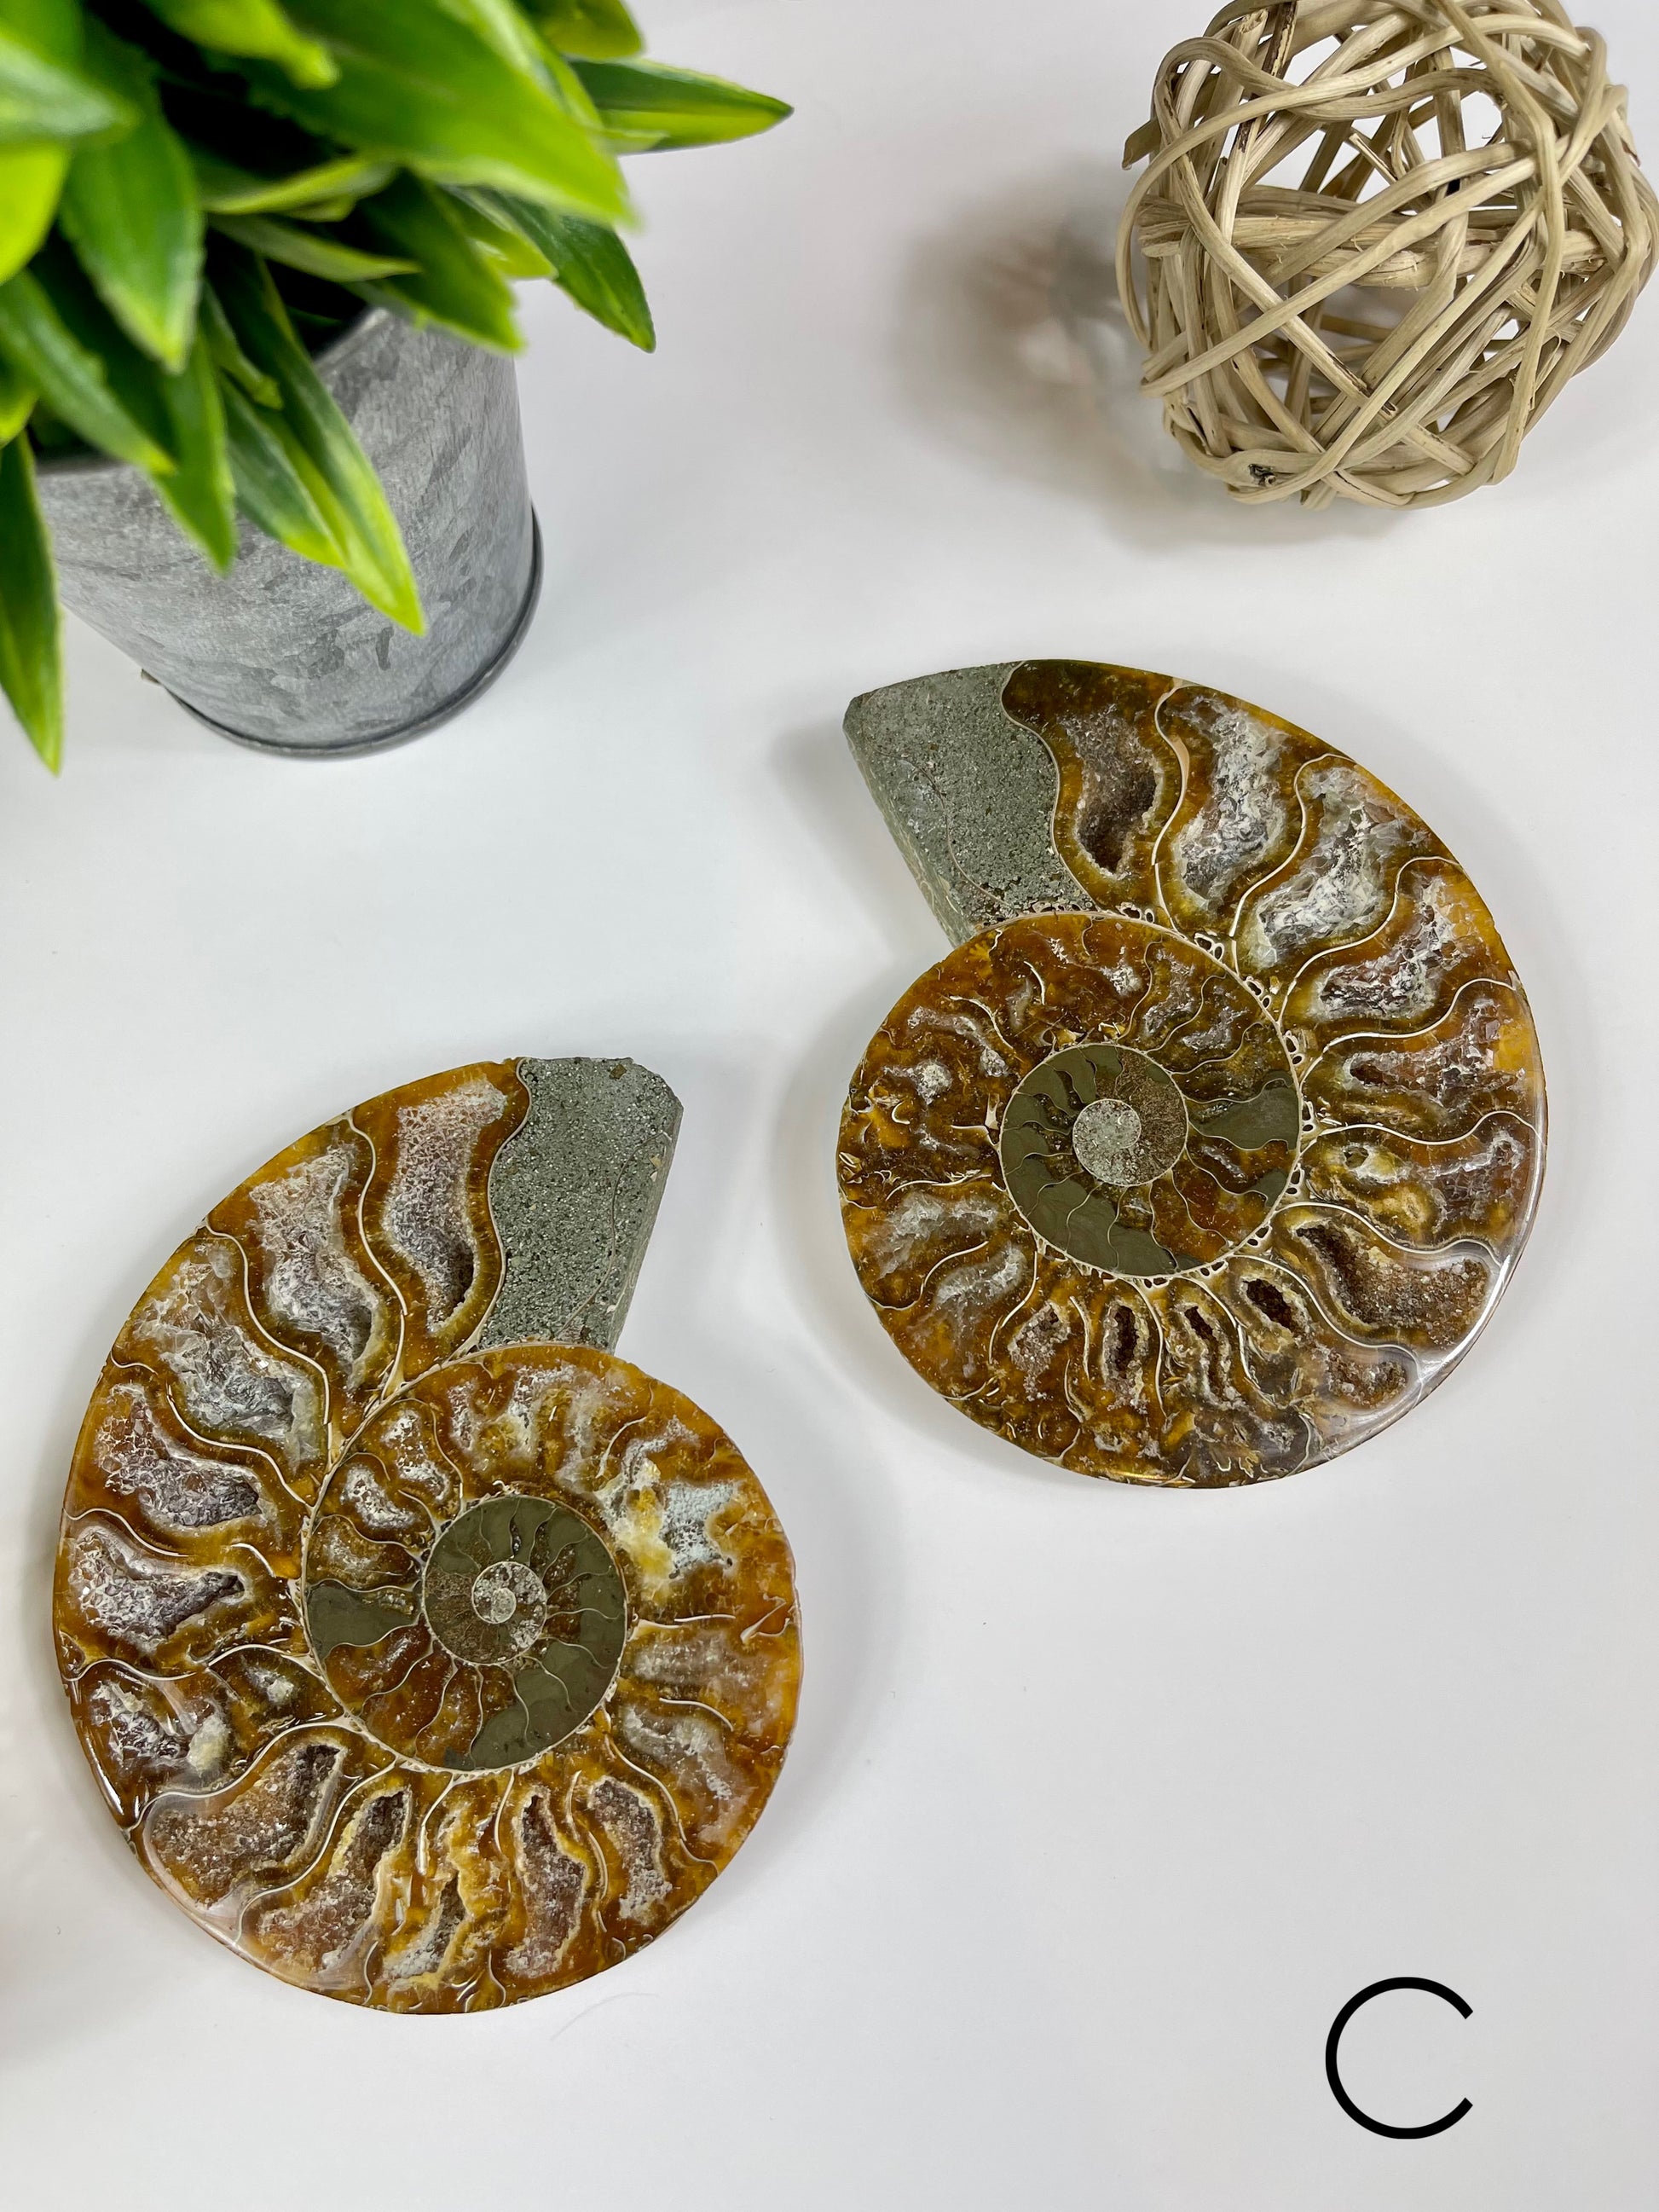 Ammonite Split Fossils Pair C